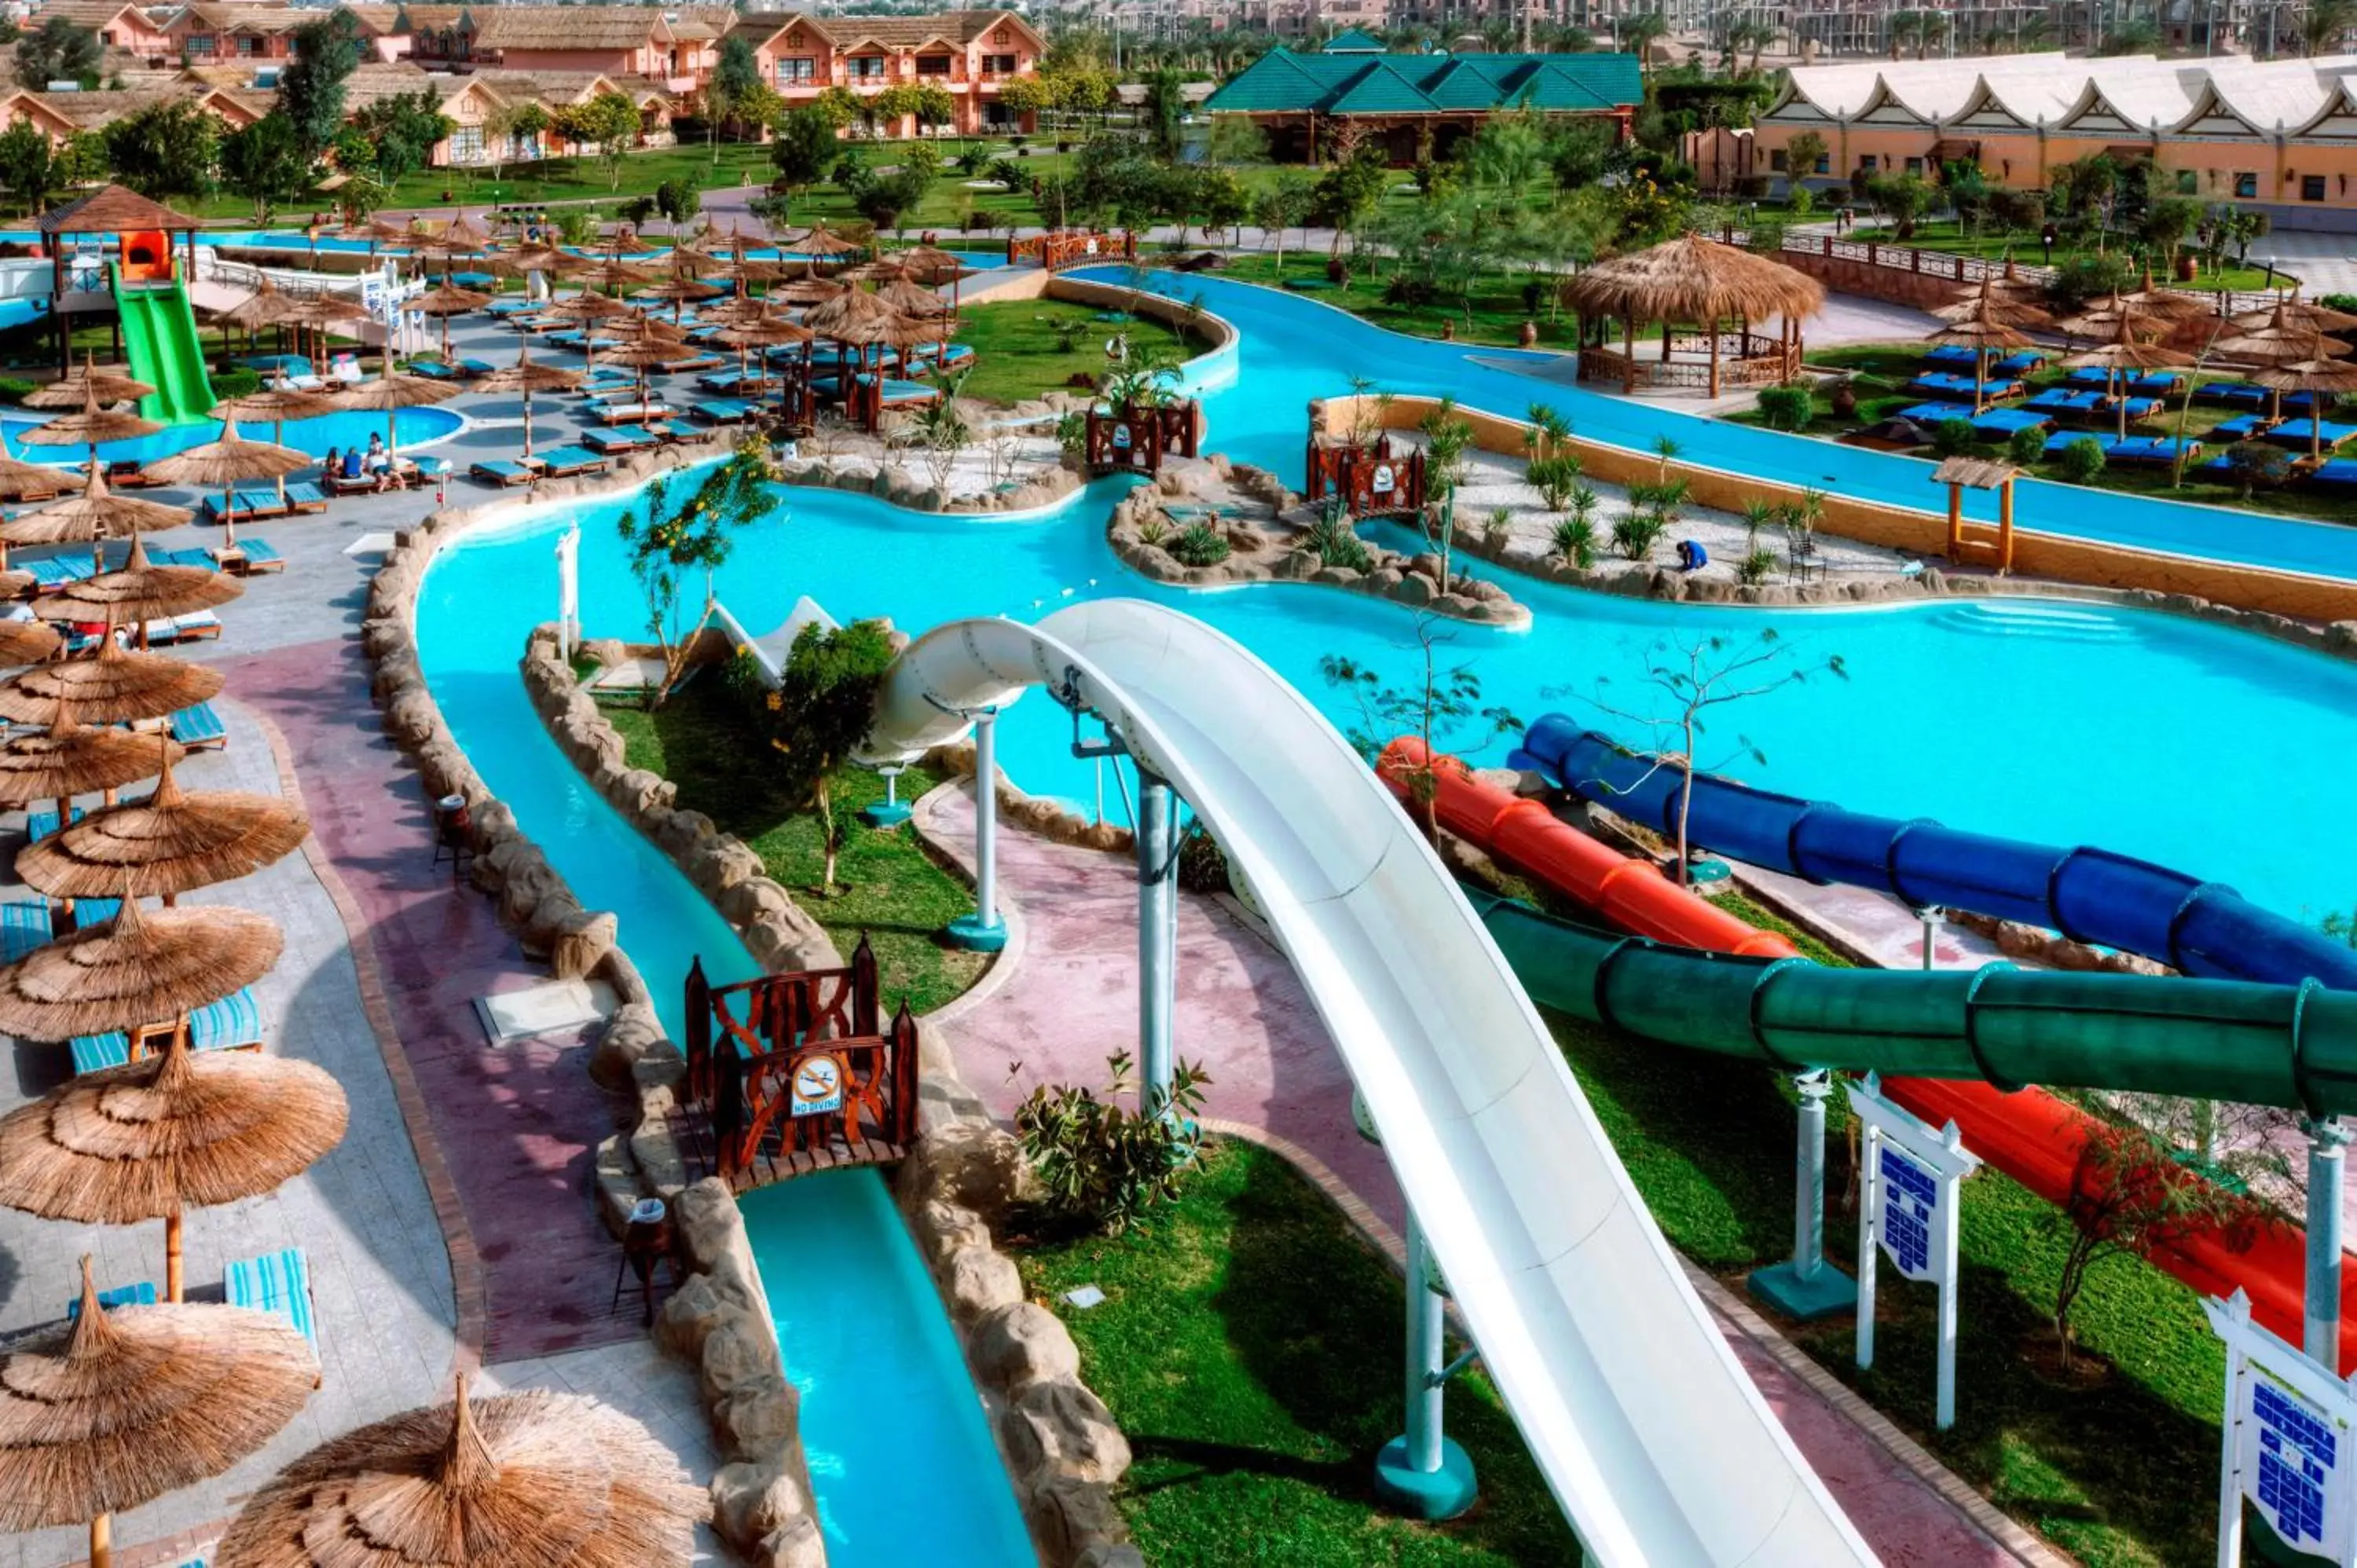 Aqua park, Water Park in Pickalbatros Jungle Aqua Park - Neverland Hurghada